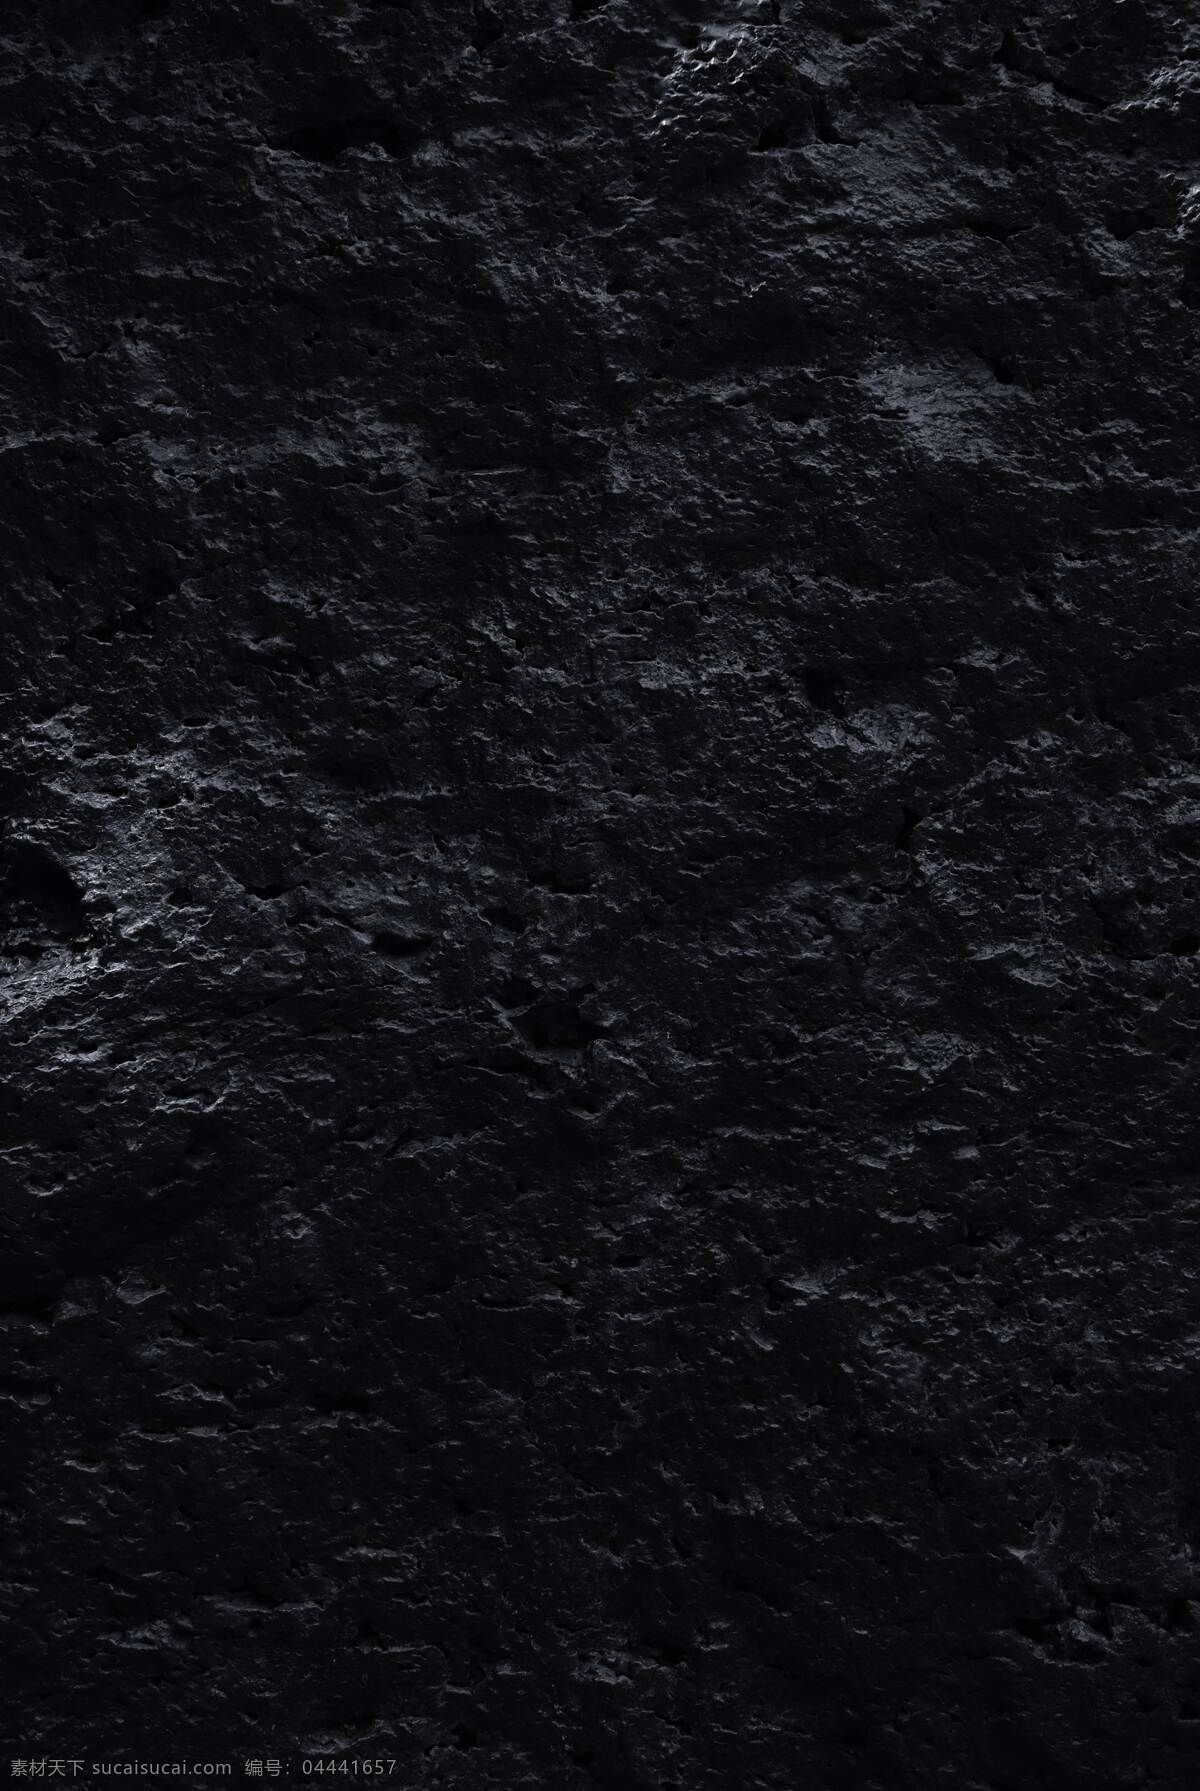 黑色岩石素材 岩石 高清 材质 海报 高端 大气 商务 黑色 背景 背景素材 免费 生活素材 生活百科